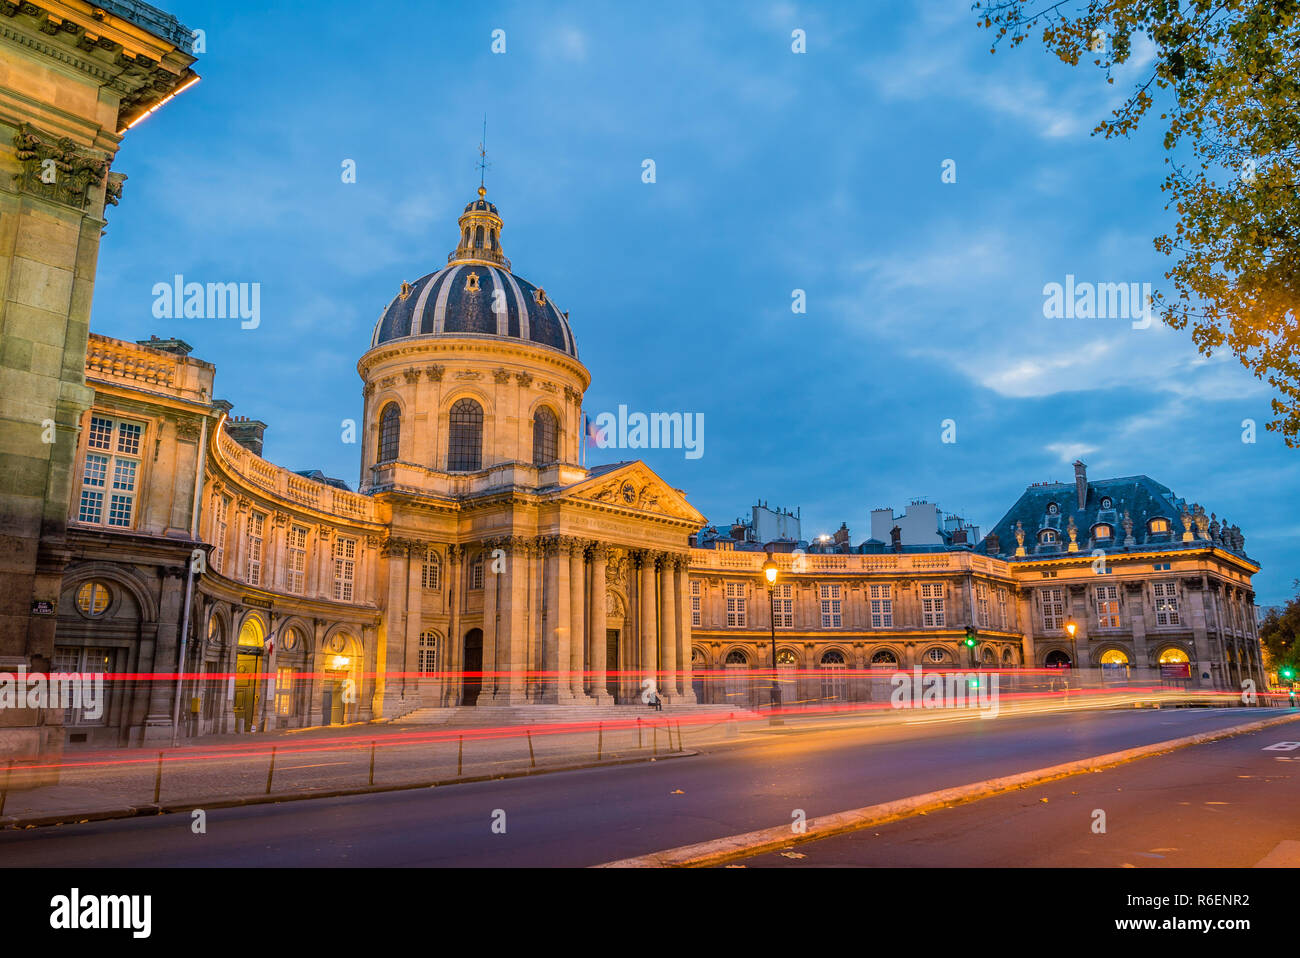 Institut de France in Paris at dusk Stock Photo